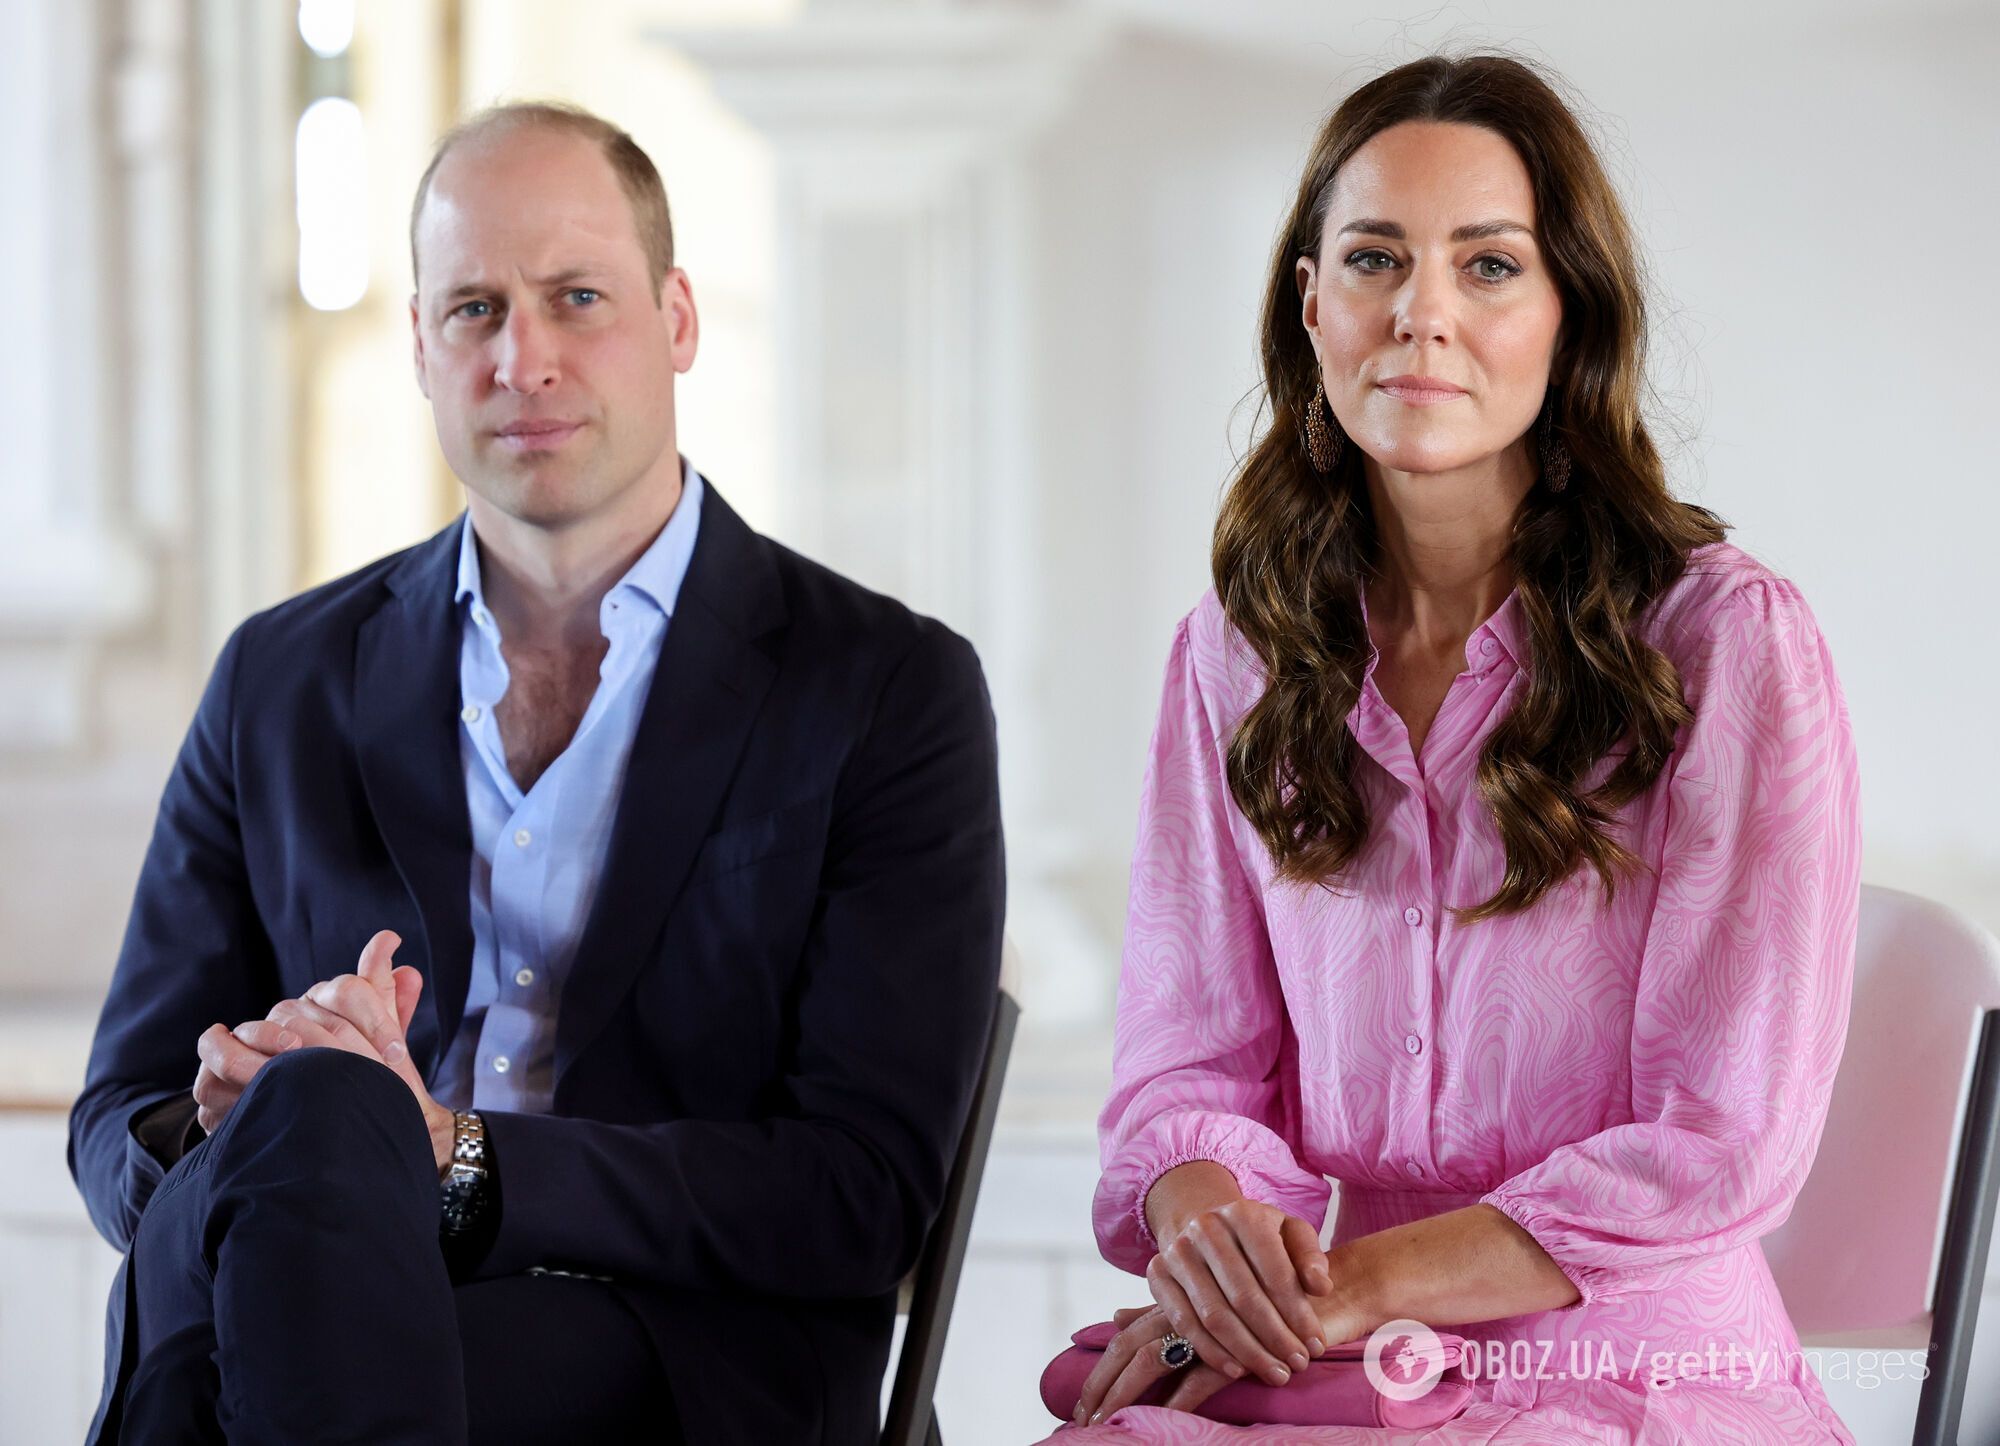 Финал сериала "Корона" предсказал будущее монархии? Какие скандалы королевской семьи могут привести к ее краху